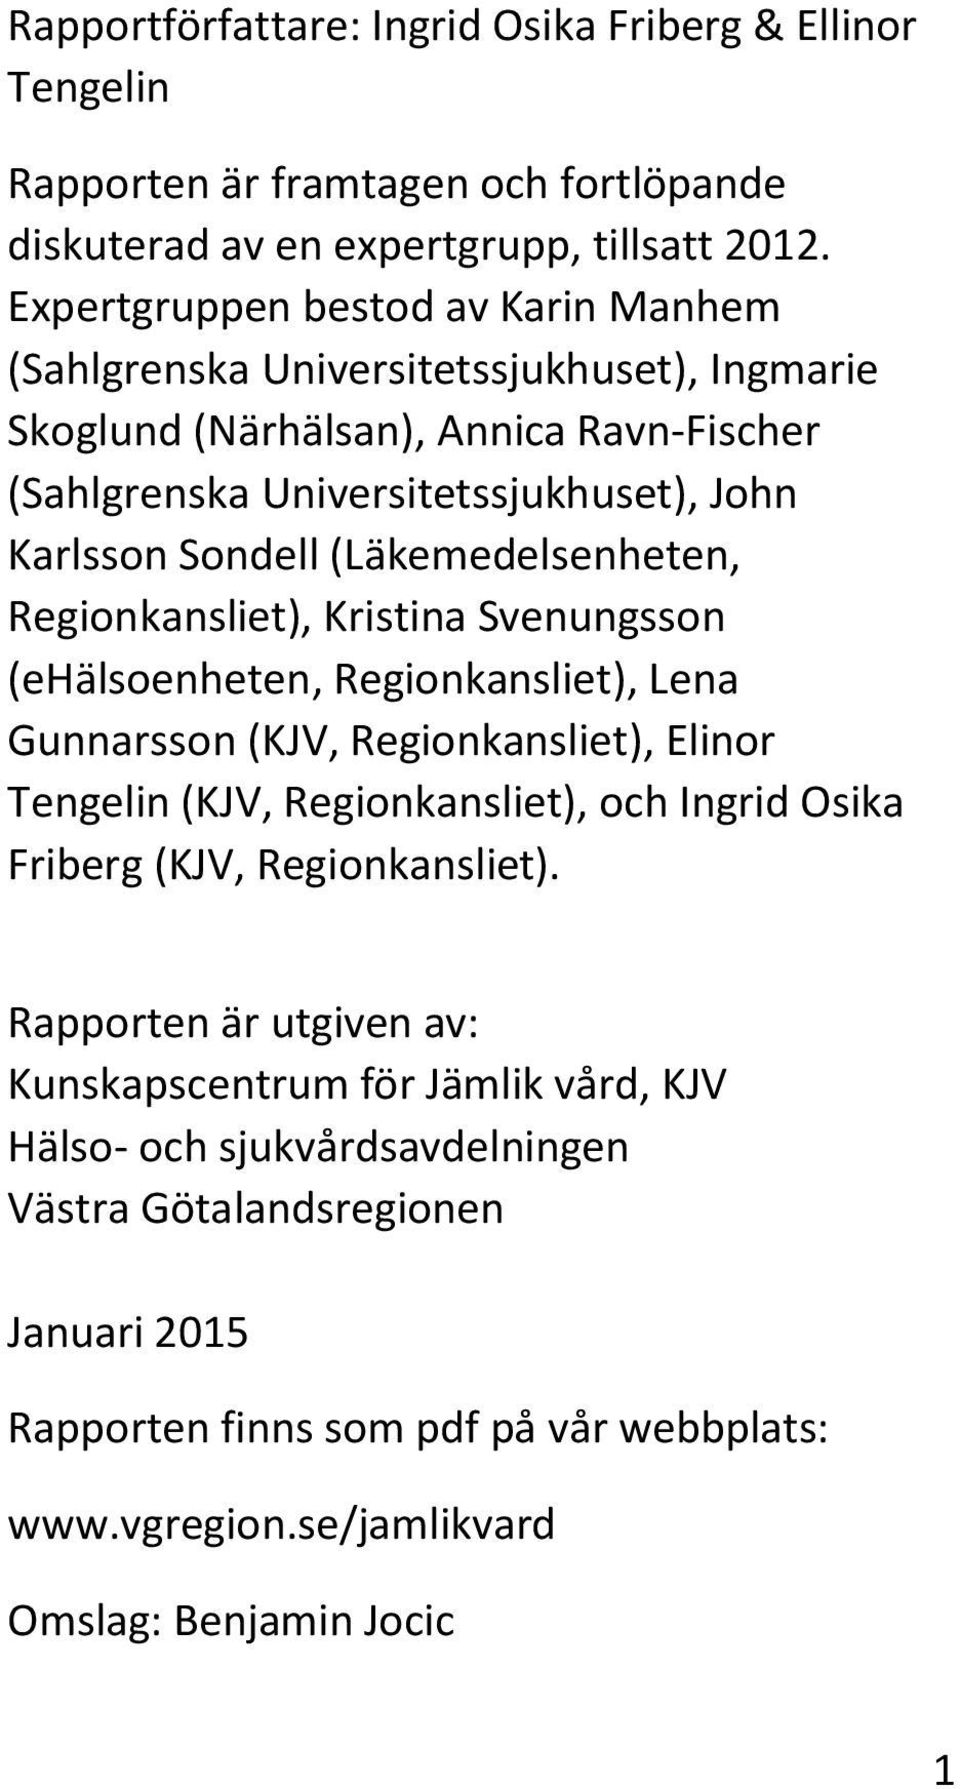 (Läkemedelsenheten, Regionkansliet), Kristina Svenungsson (ehälsoenheten, Regionkansliet), Lena Gunnarsson (KJV, Regionkansliet), Elinor Tengelin (KJV, Regionkansliet), och Ingrid Osika